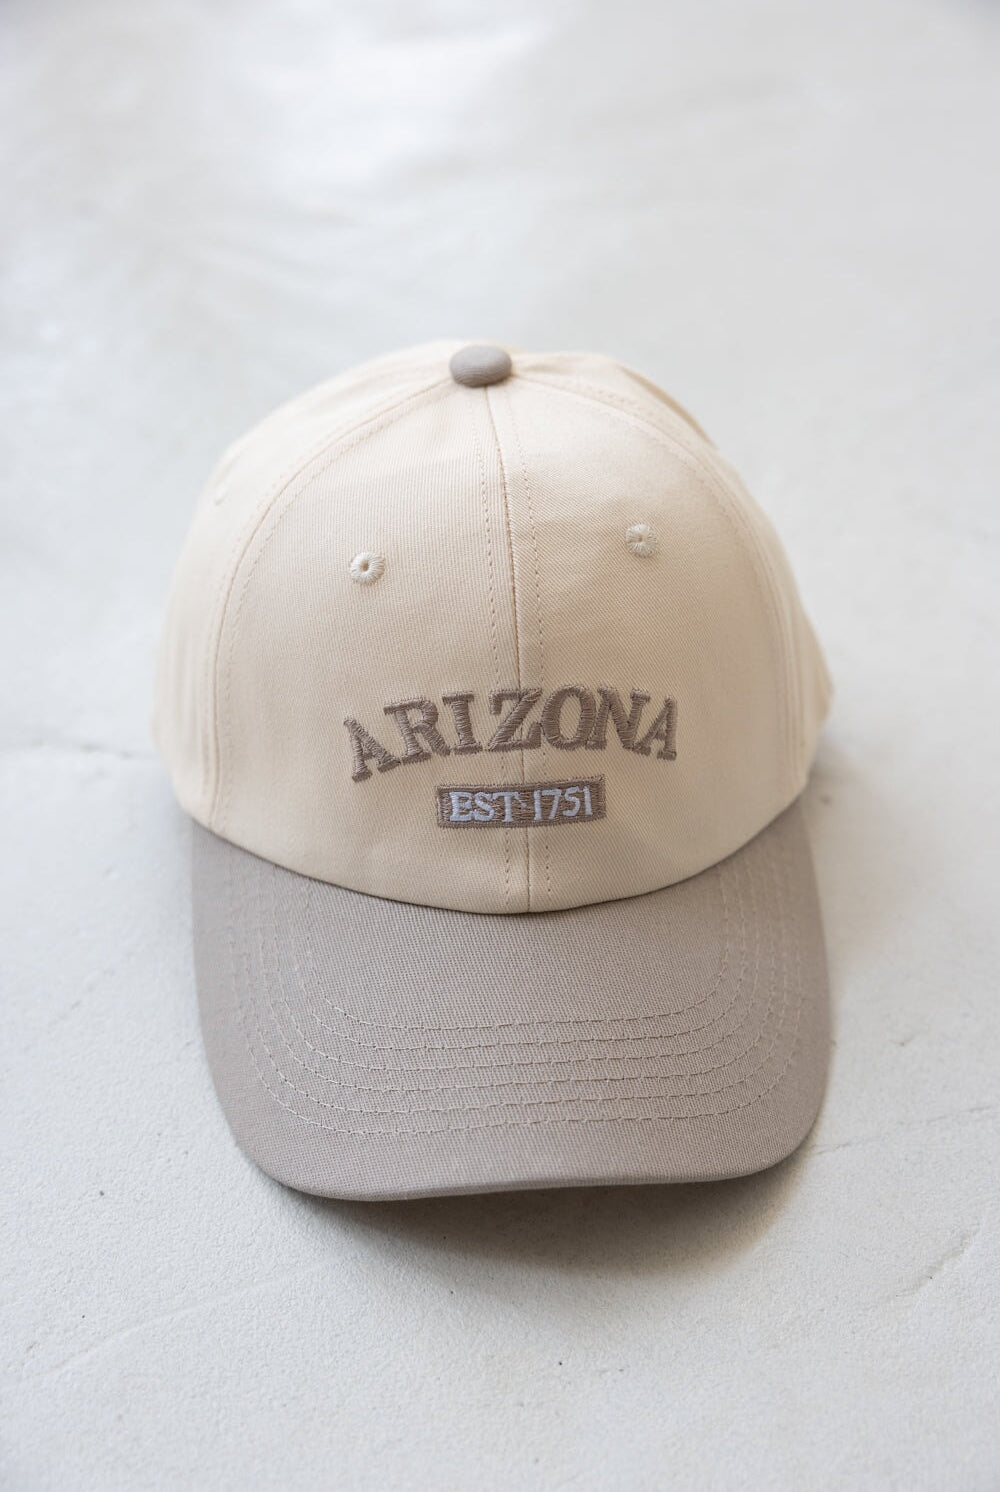 כובע אריזונה TwentySix 